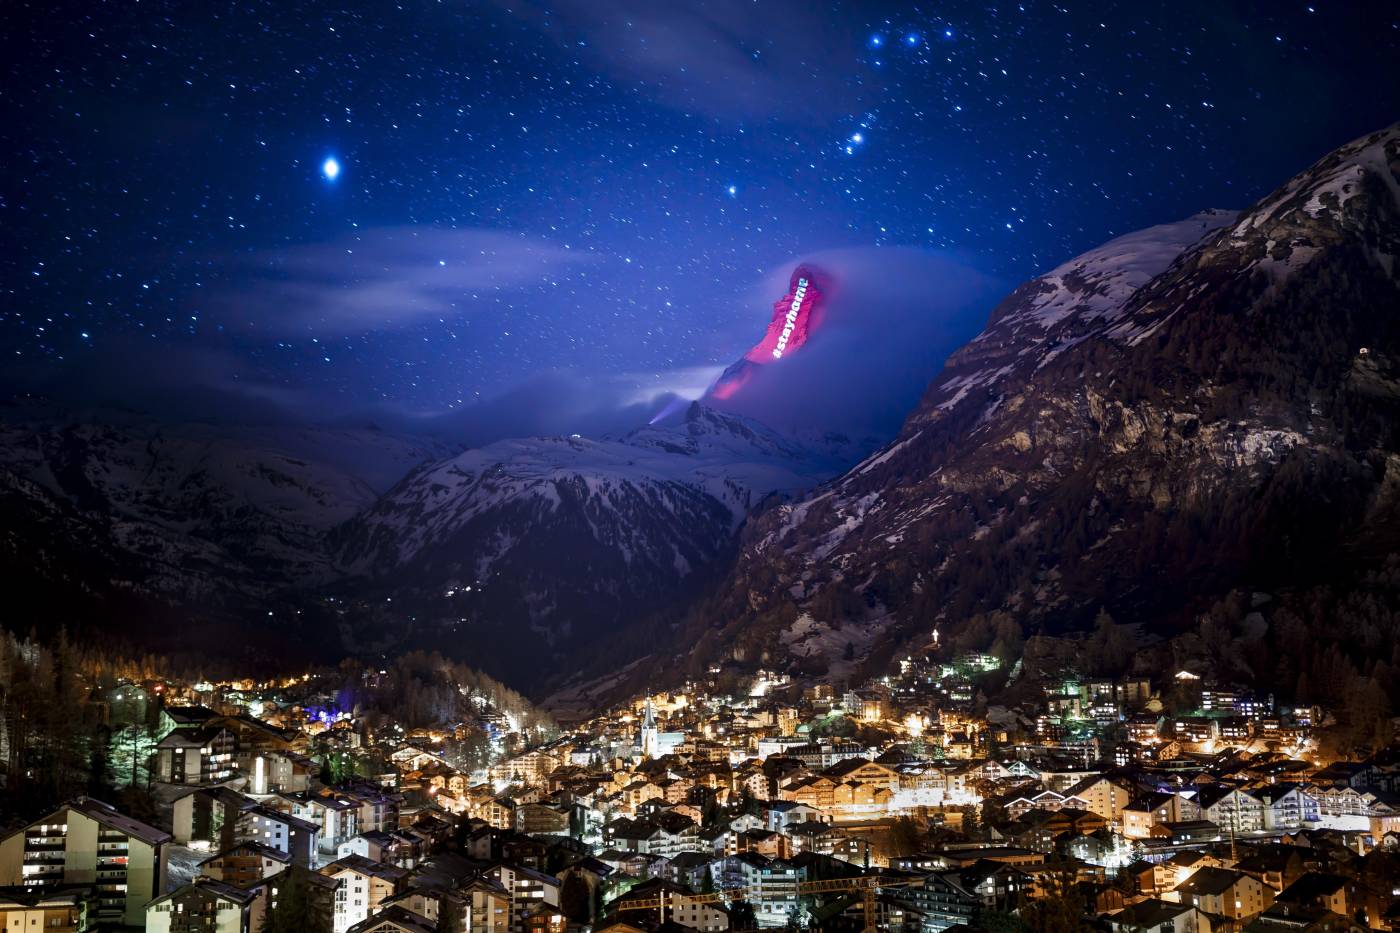 Vista de la montaña Matterhorn iluminada por el artista suizo Gerry Hofstetter para mandar un mensaje de ánimo, esperanza y solidaridad a todos aquellos que están sufriendo los estragos caudados por el coronavirus, en la localidad helvética de Zermatt, Suiza. 